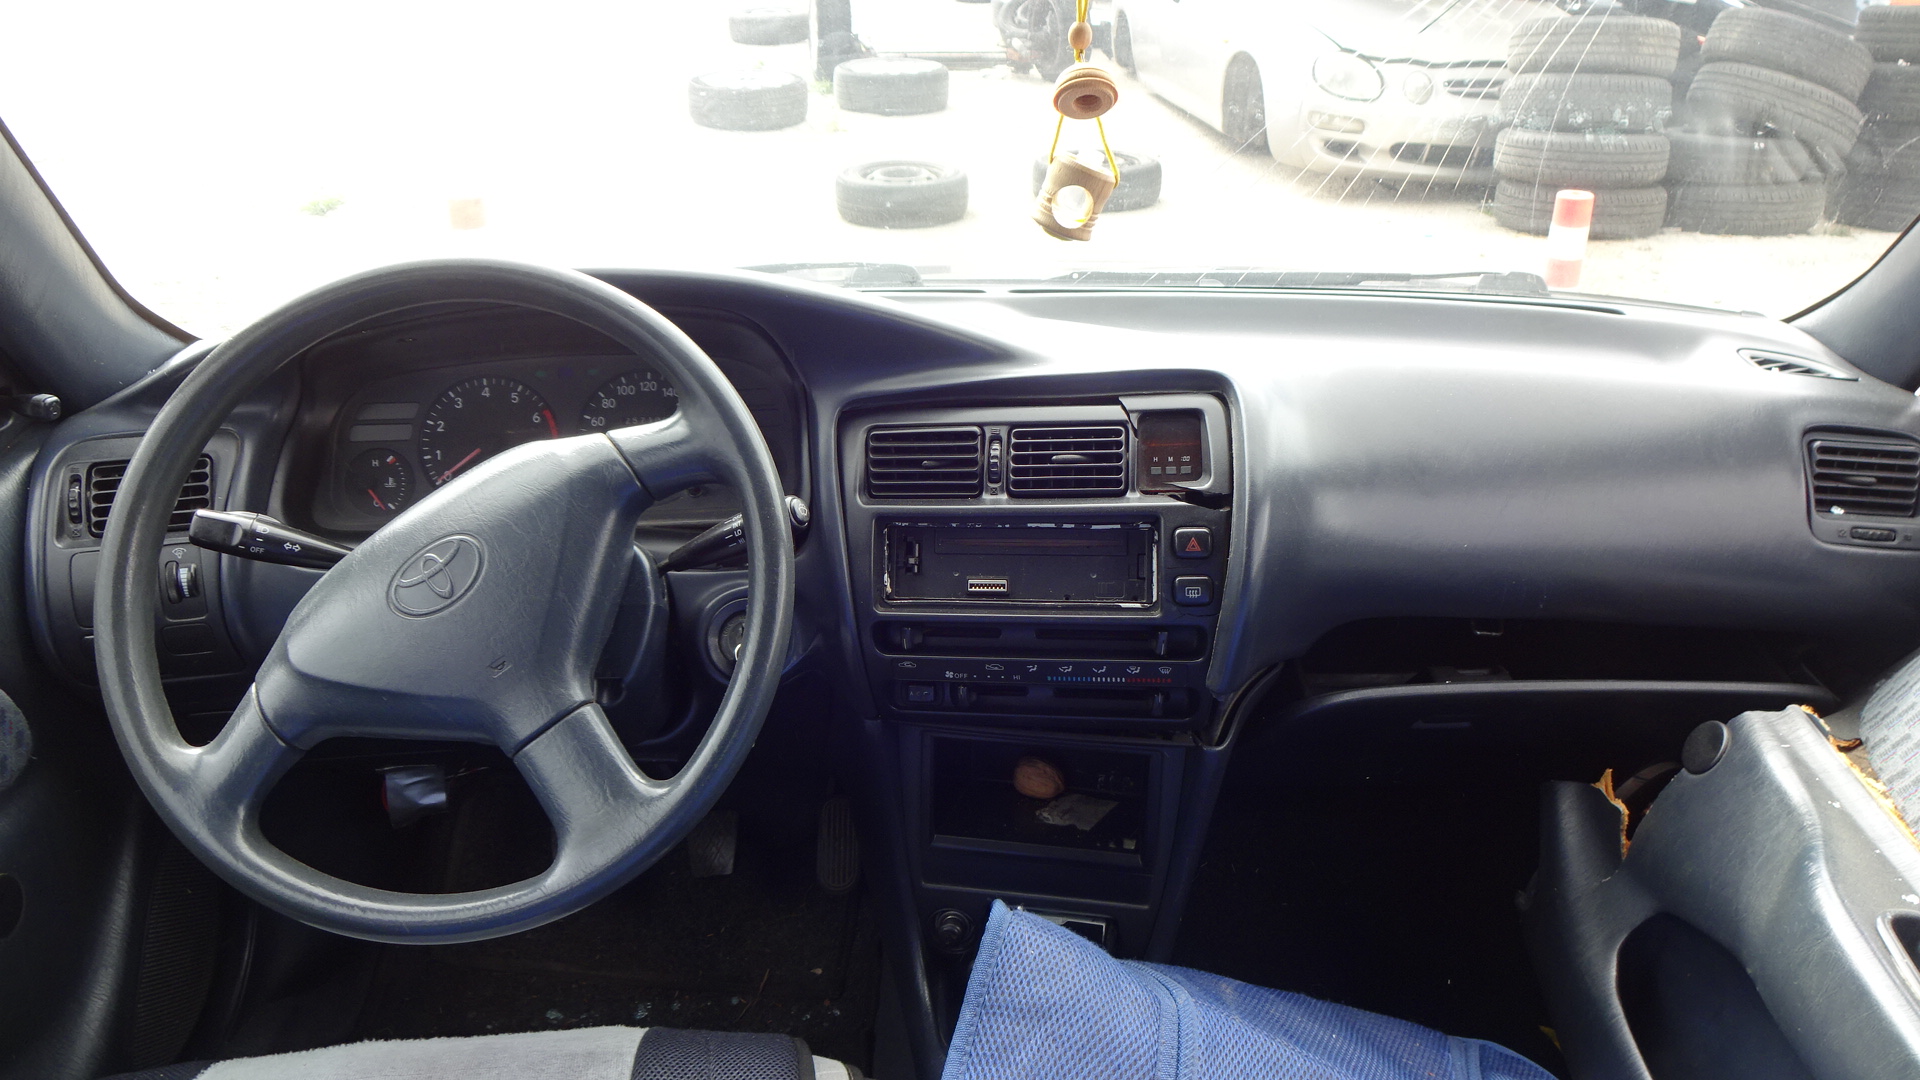 Πορτάκι Ρεζερβουάρ Toyota  Corolla ’97 Προσφορά.